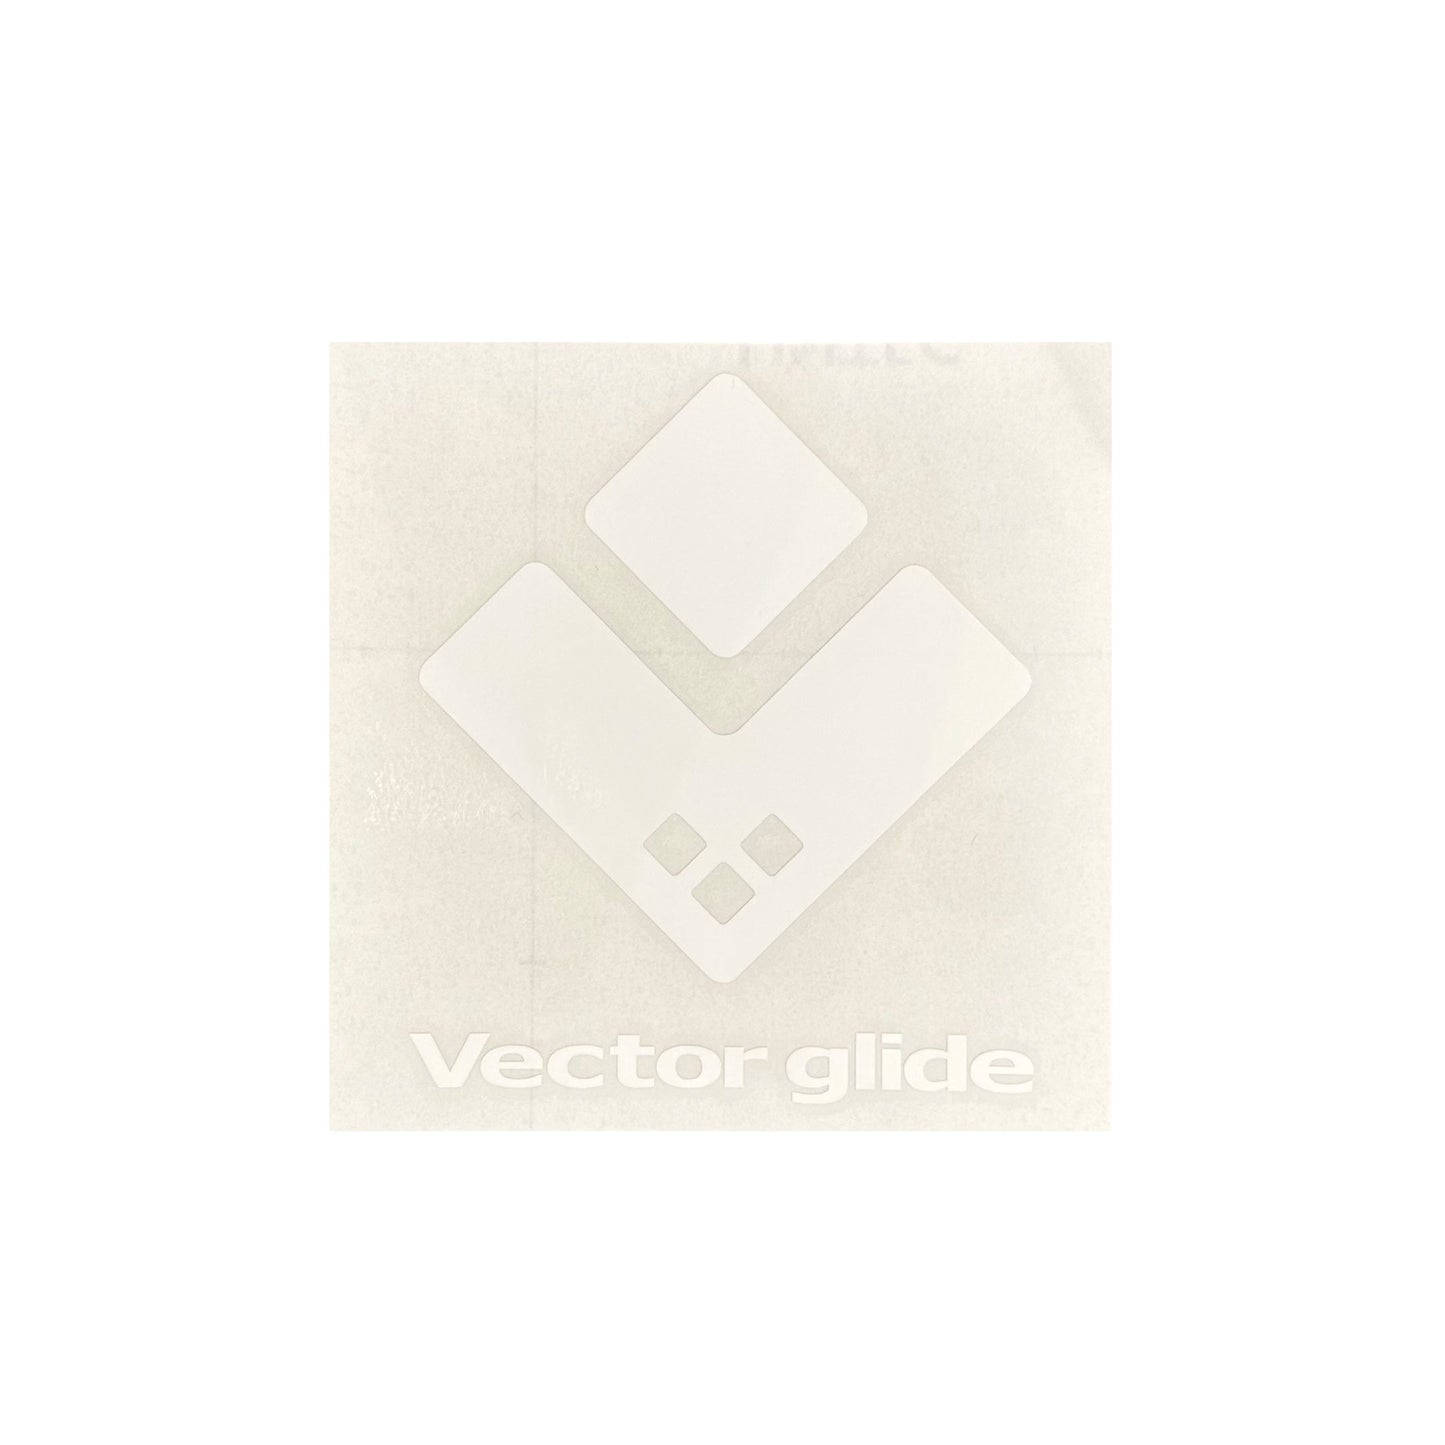 【早期予約】VECTOR GLIDE Logo Cutting sticker  Square